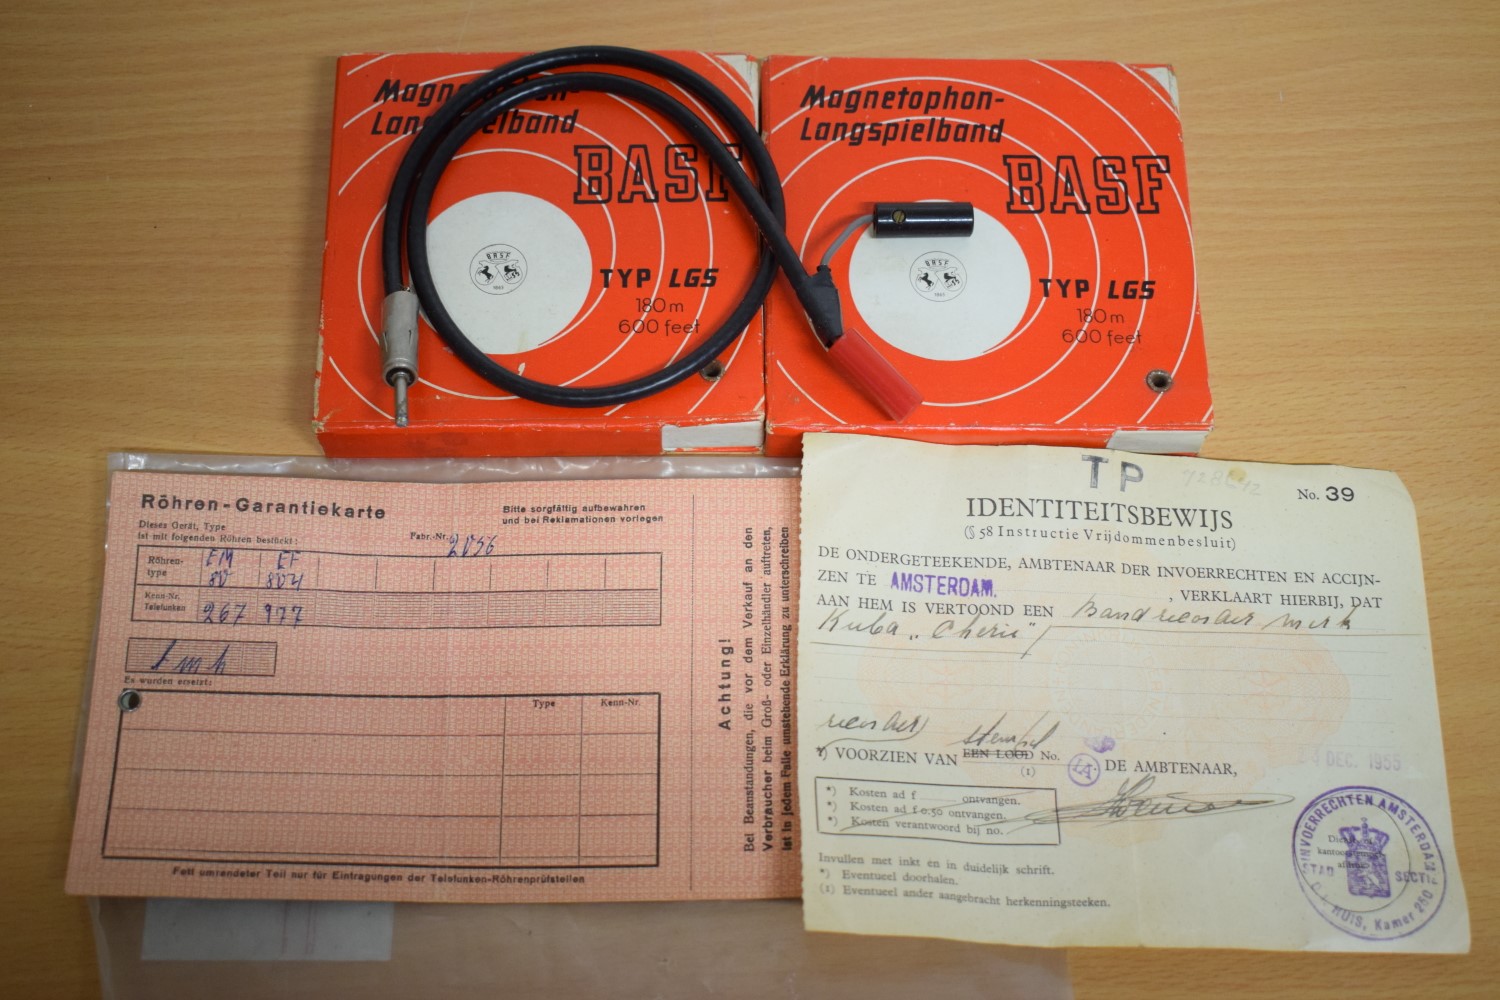 Kuba Cherie Tube Tape Recorder